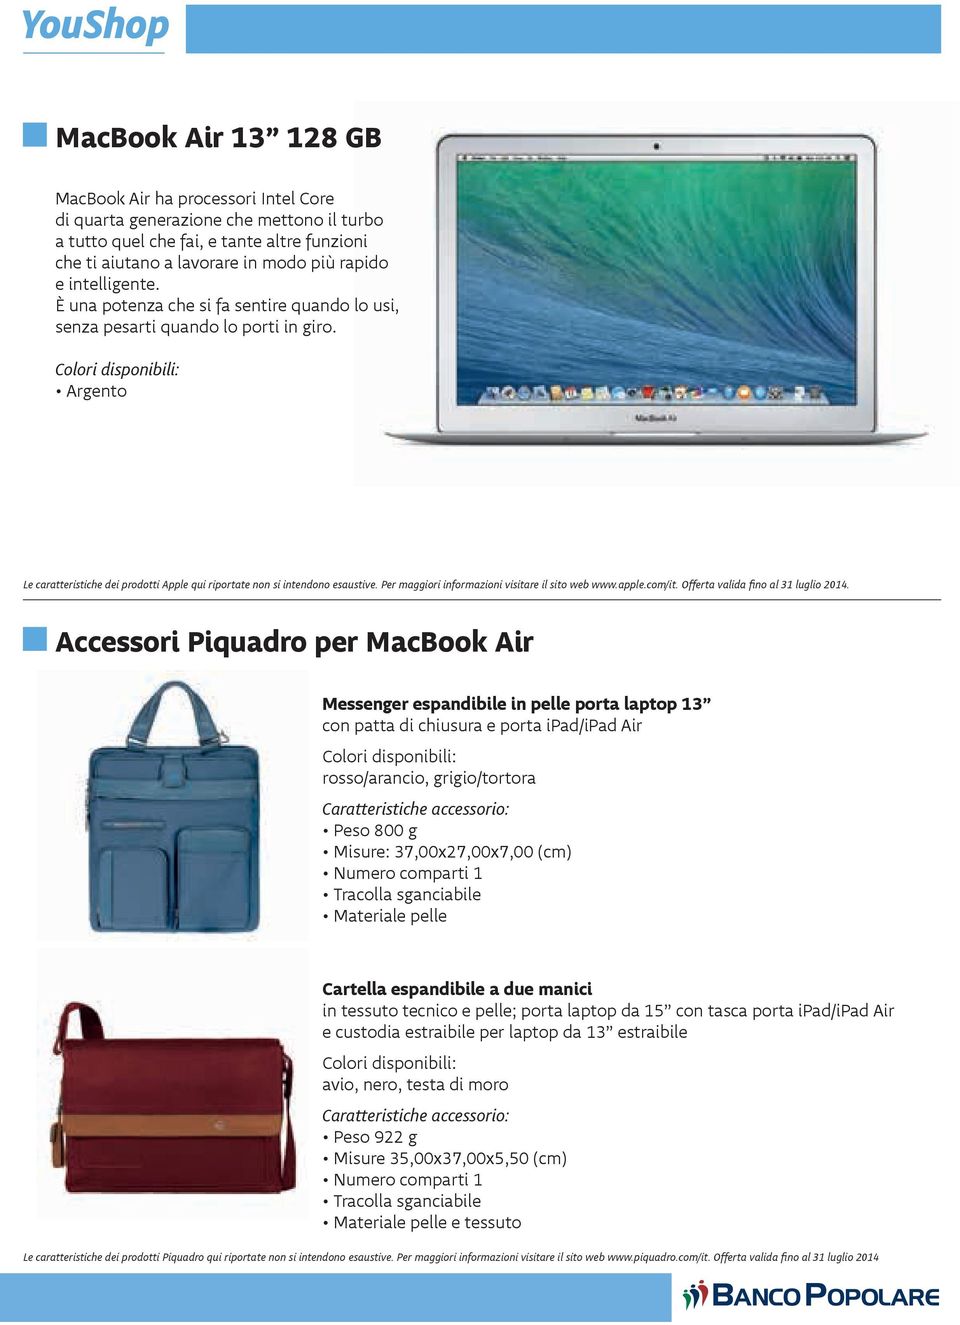 Accessori Piquadro per MacBook Air Messenger espandibile in pelle porta laptop 13 con patta di chiusura e porta ipad/ipad Air rosso/arancio, grigio/tortora Peso 800 g Misure: 37,00x27,00x7,00